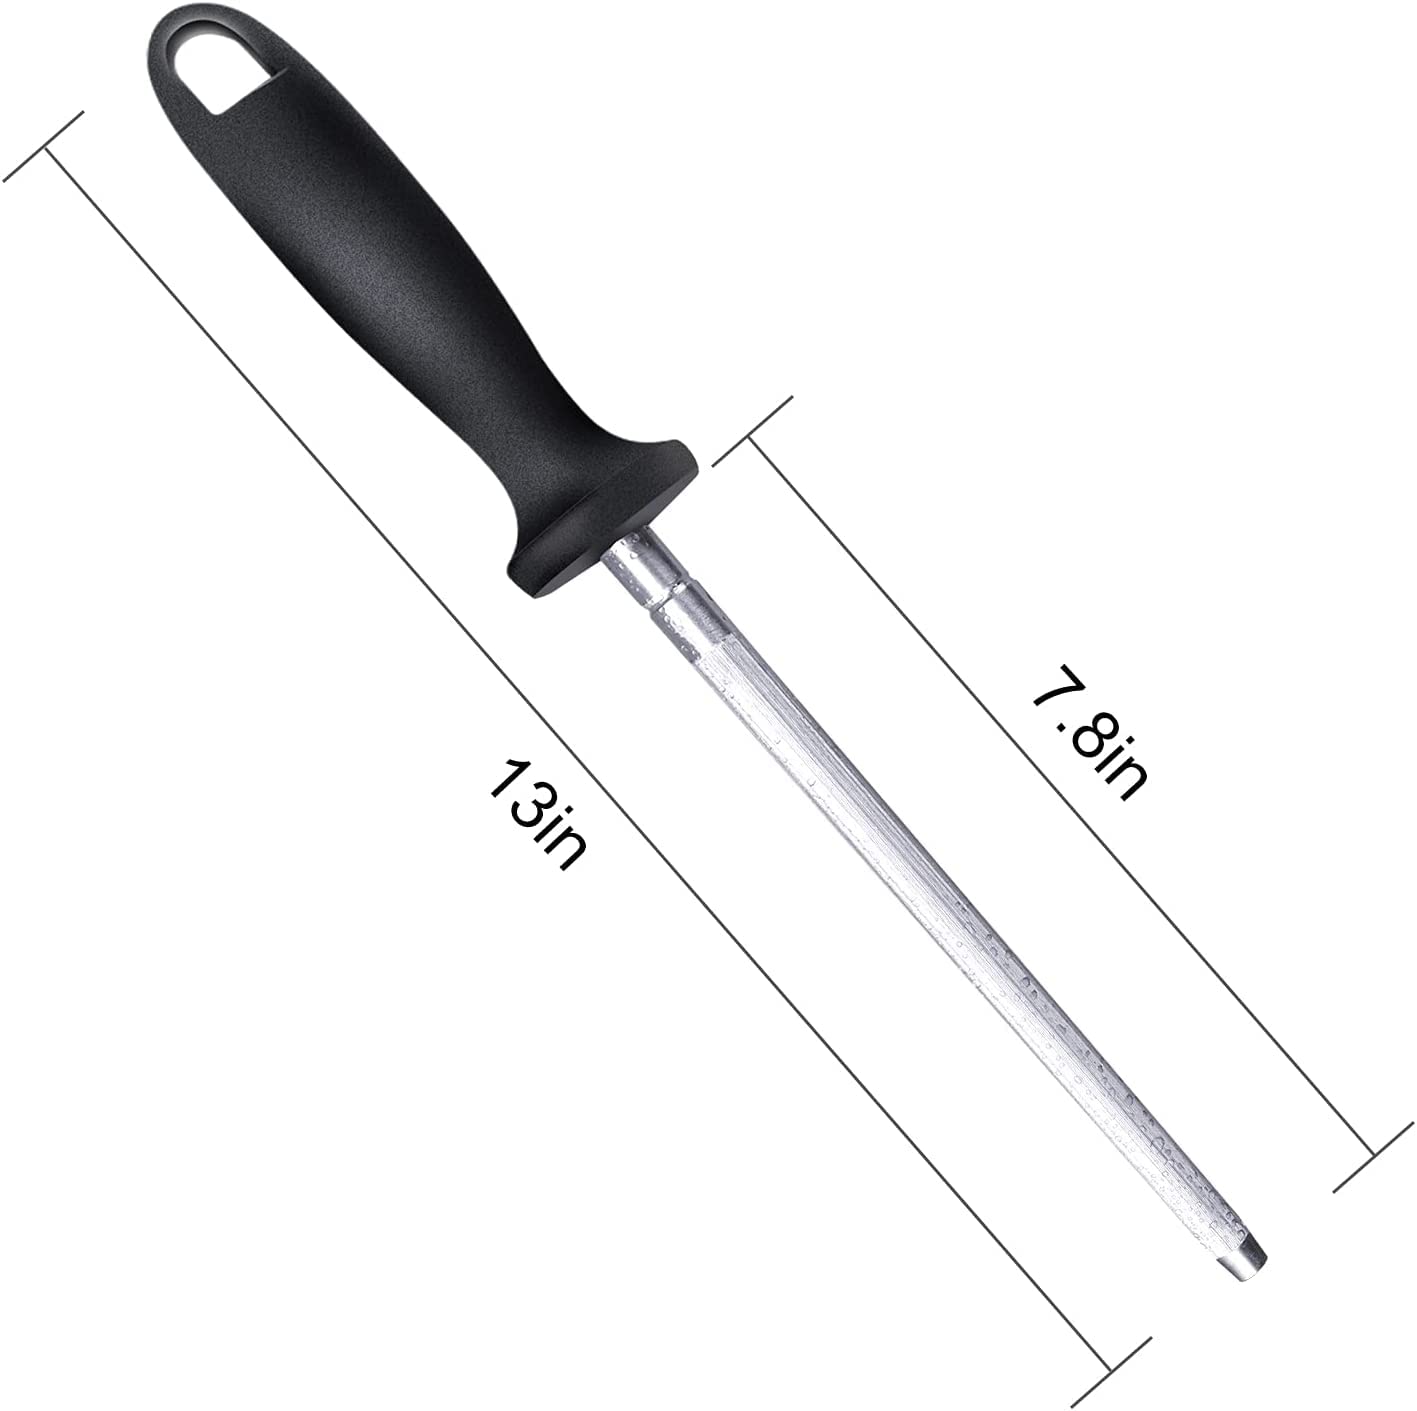 Bkinpid Knife Sharpening Rod Steel Professional Kitchen Sharpener 13 Inch Black